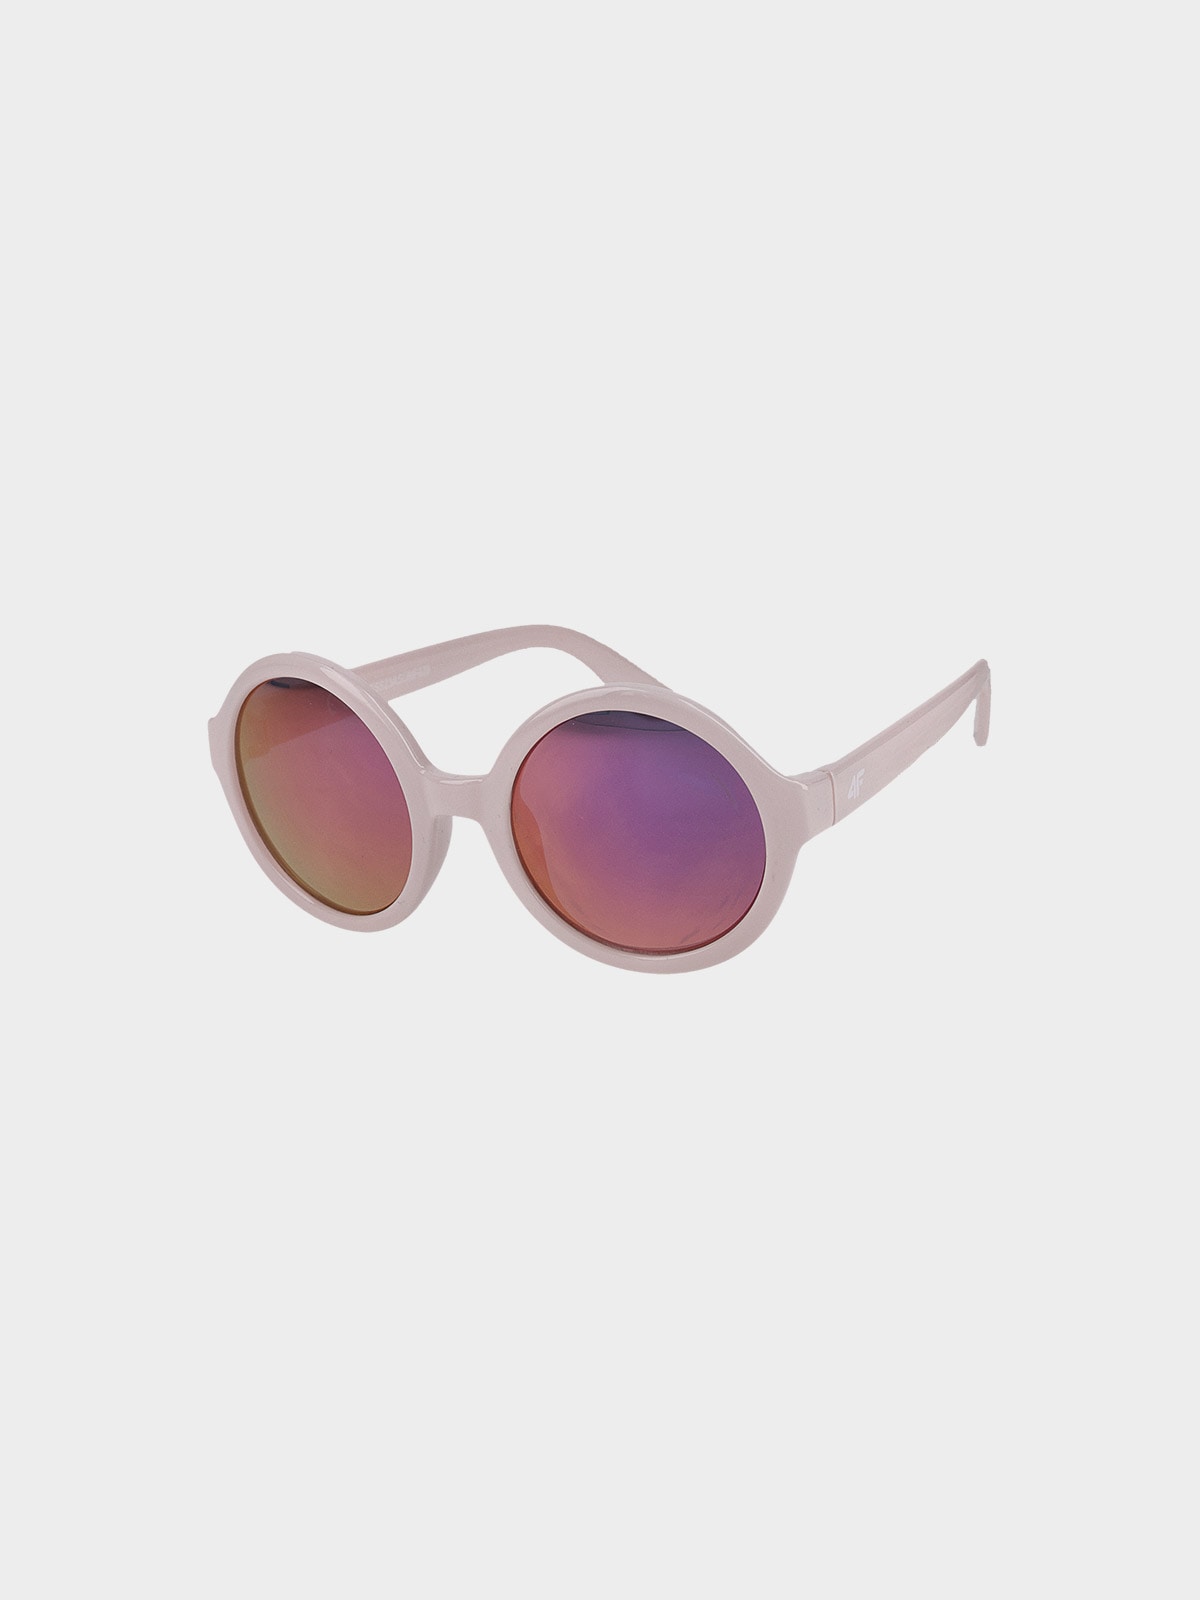 Dievčenské slnečné okuliare s viacfarebným povlakom